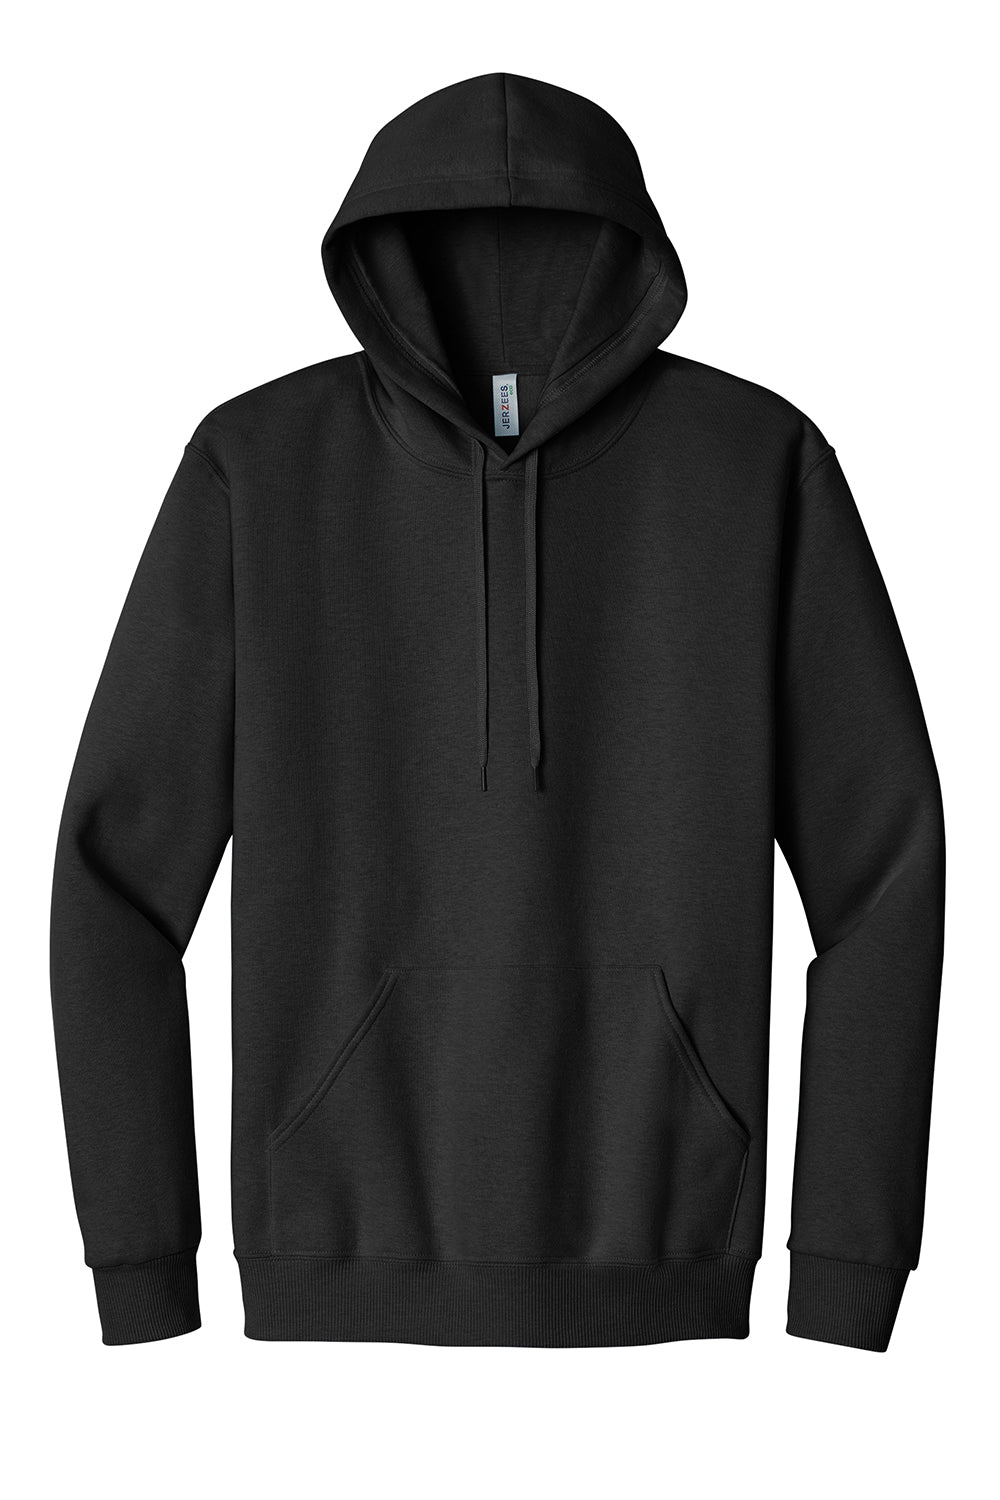 Jerzees 700M Mens Eco Premium Hooded Sweatshirt Hoodie Heather Ink Black Flat Front